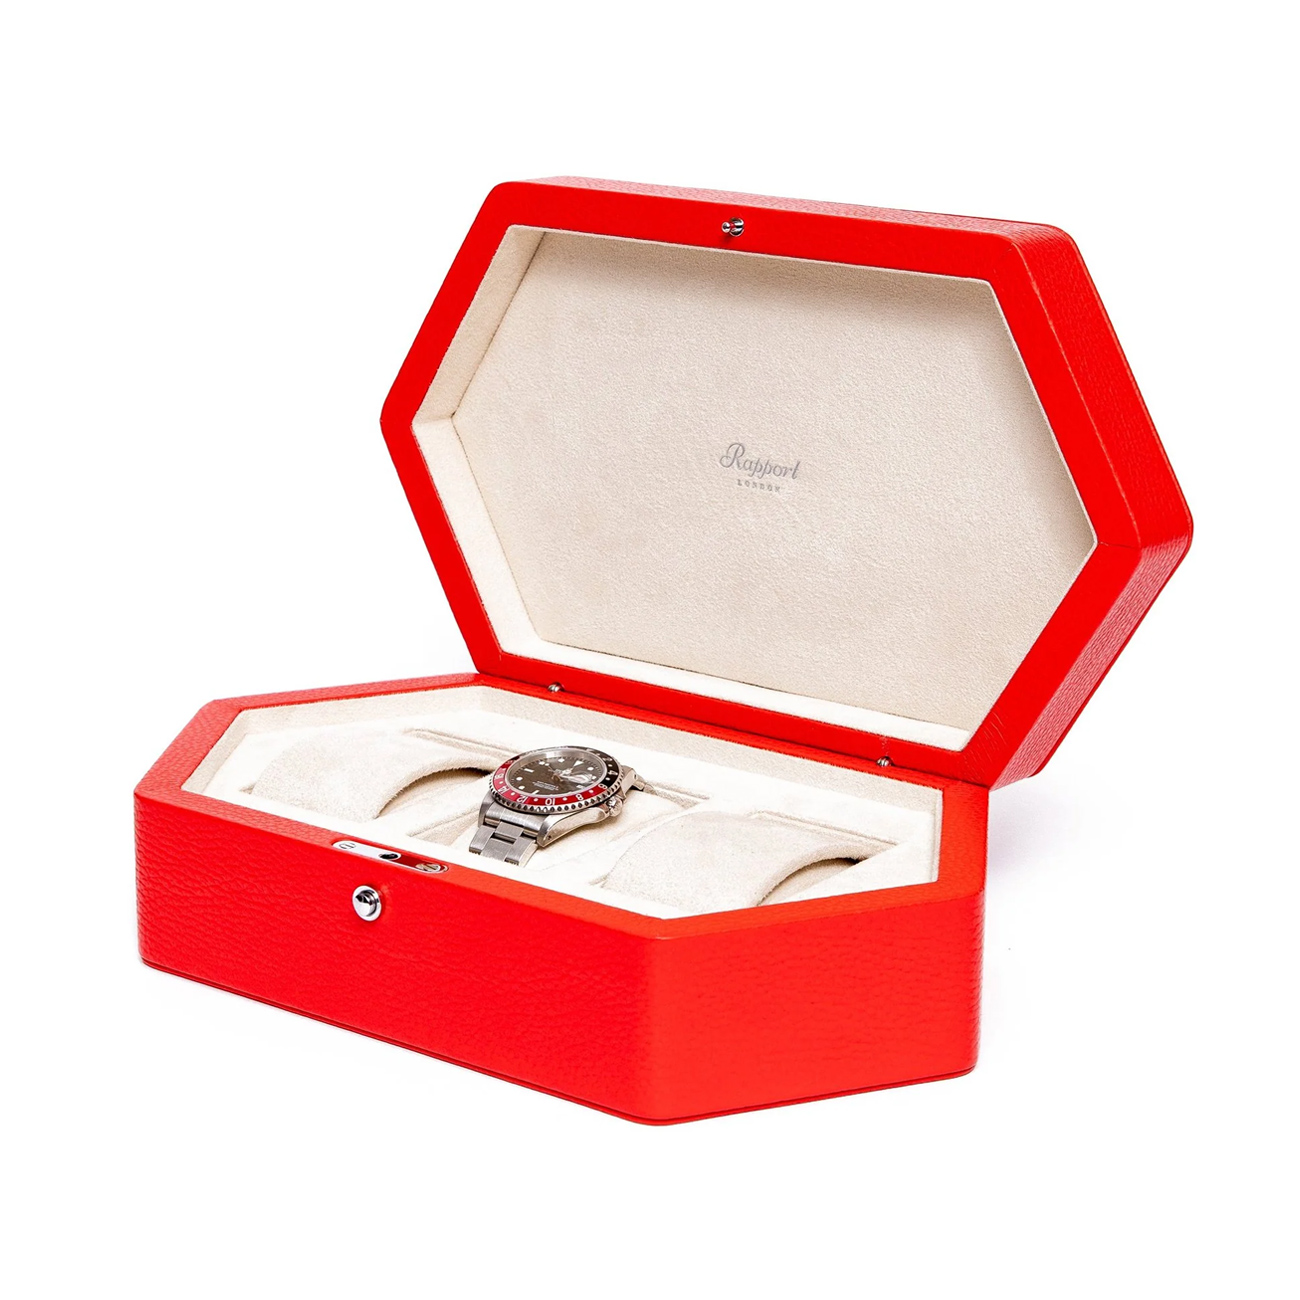 Rapport Portobello Triple Watch Box In Red Leather